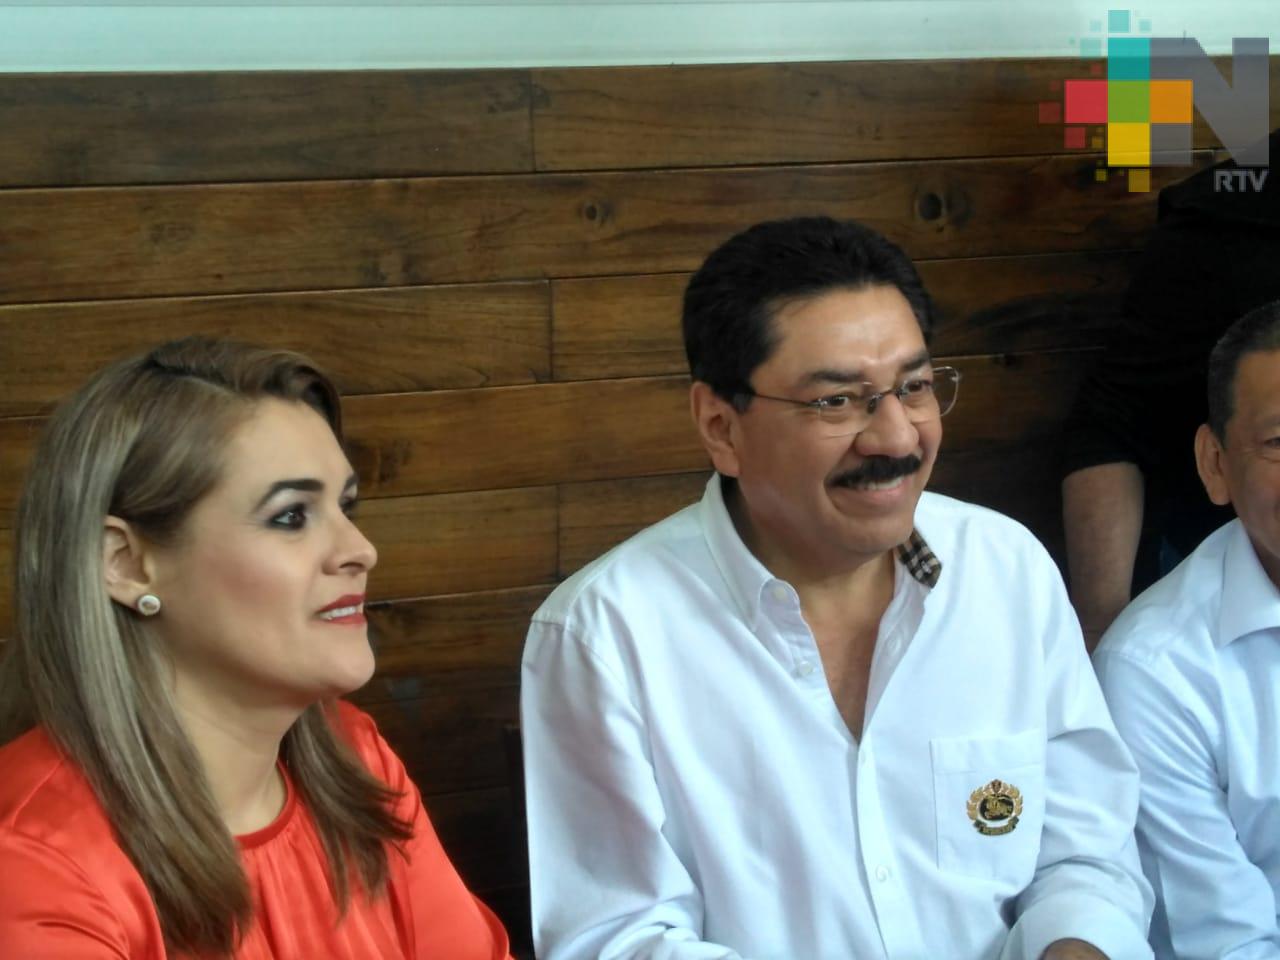 Alejandro Moreno gasta muchos recursos públicos para su campaña, acusa Ulises Ruiz